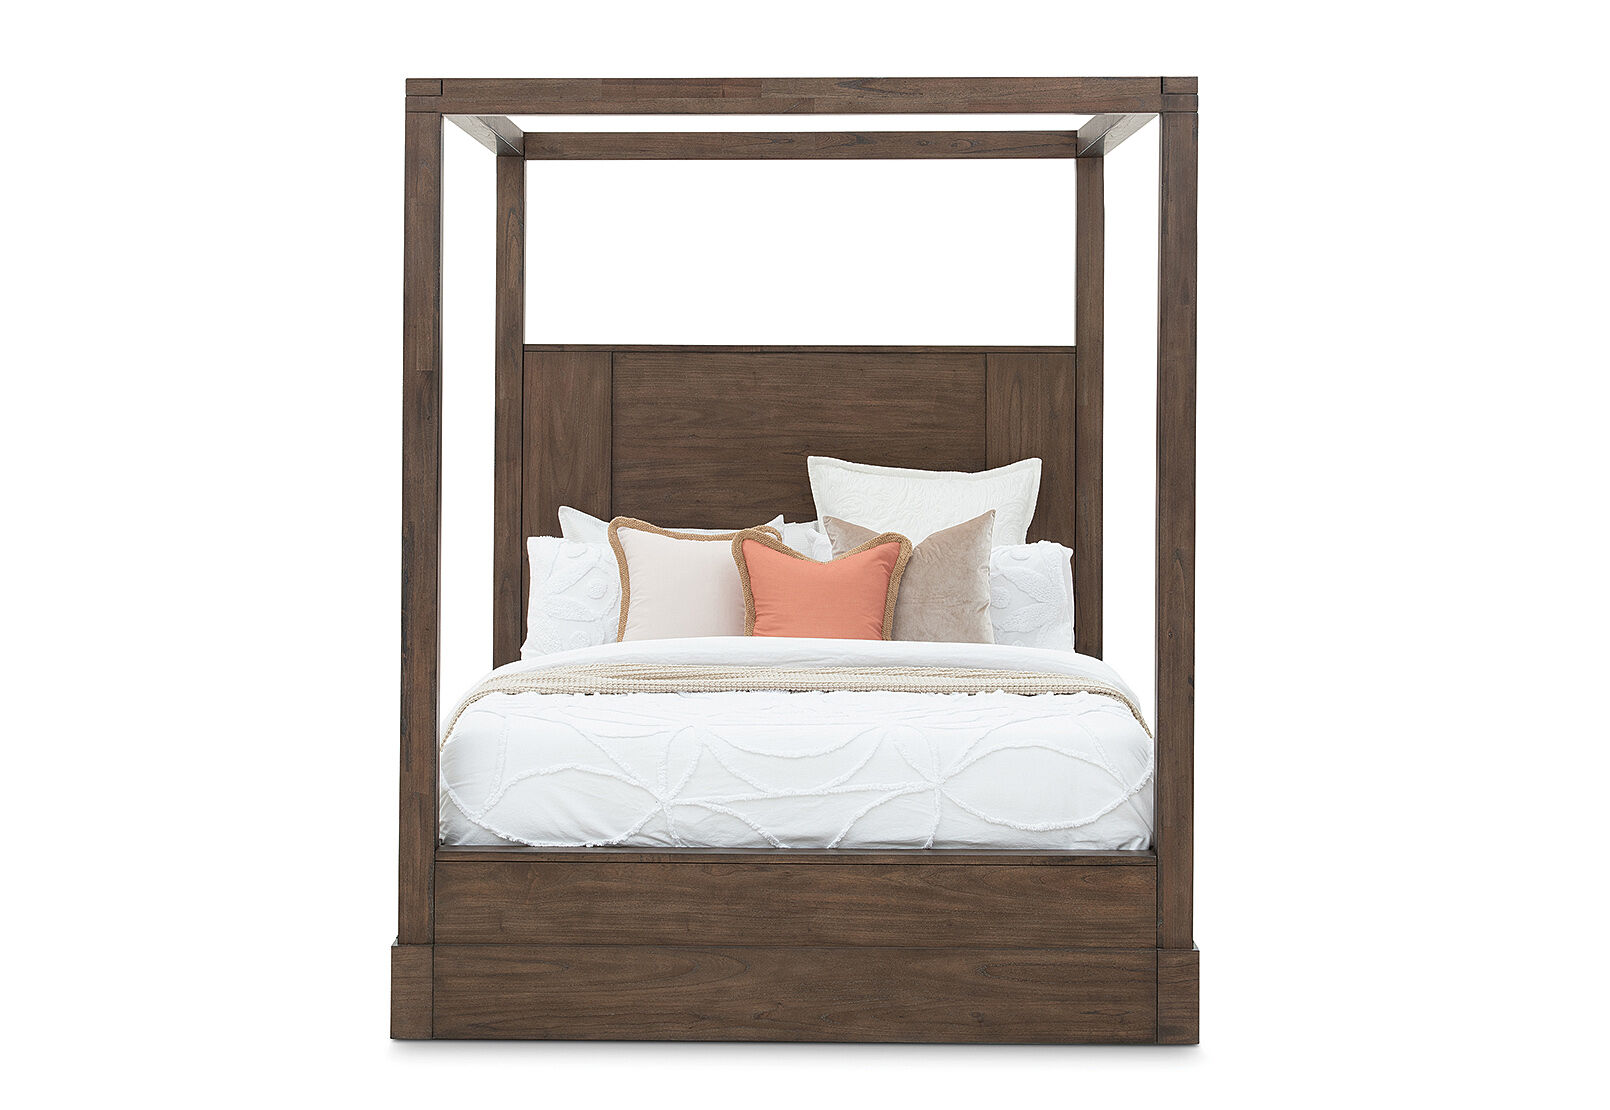 4 Post Queen Bed Amart Furniture, Roseville Bunk Beds